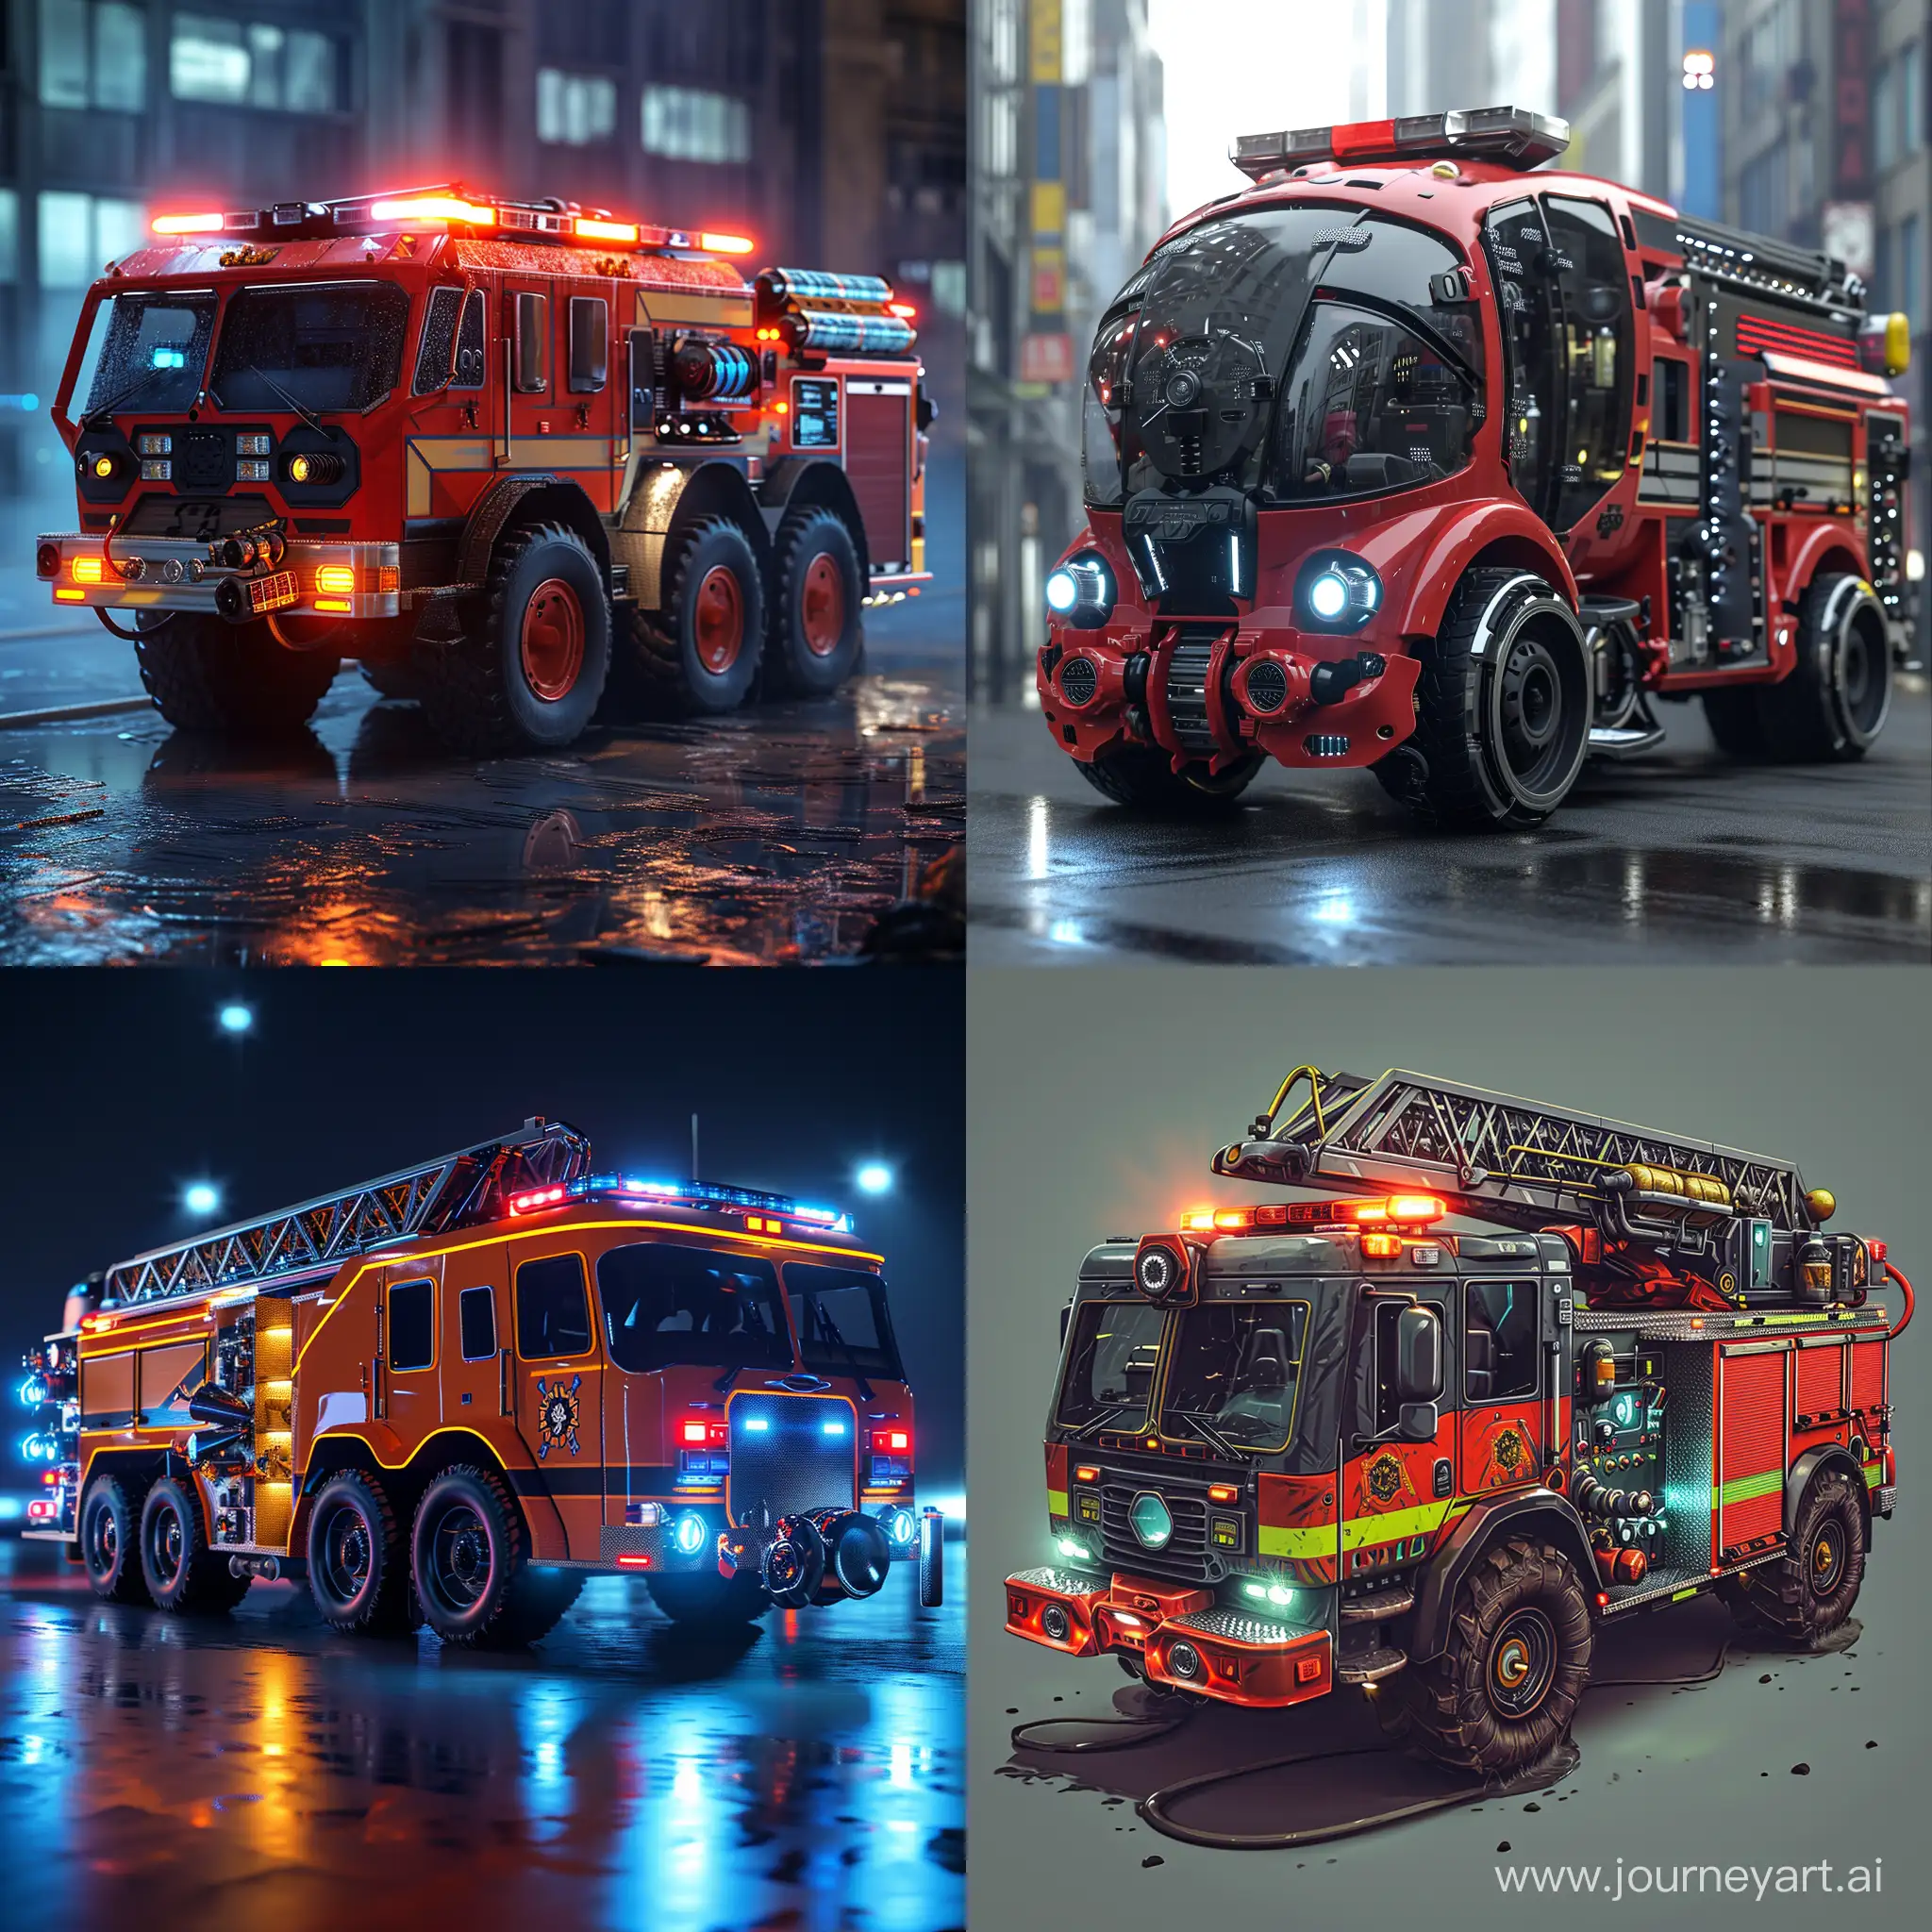 Futuristic fire truck, high tech --upbeta --v 6